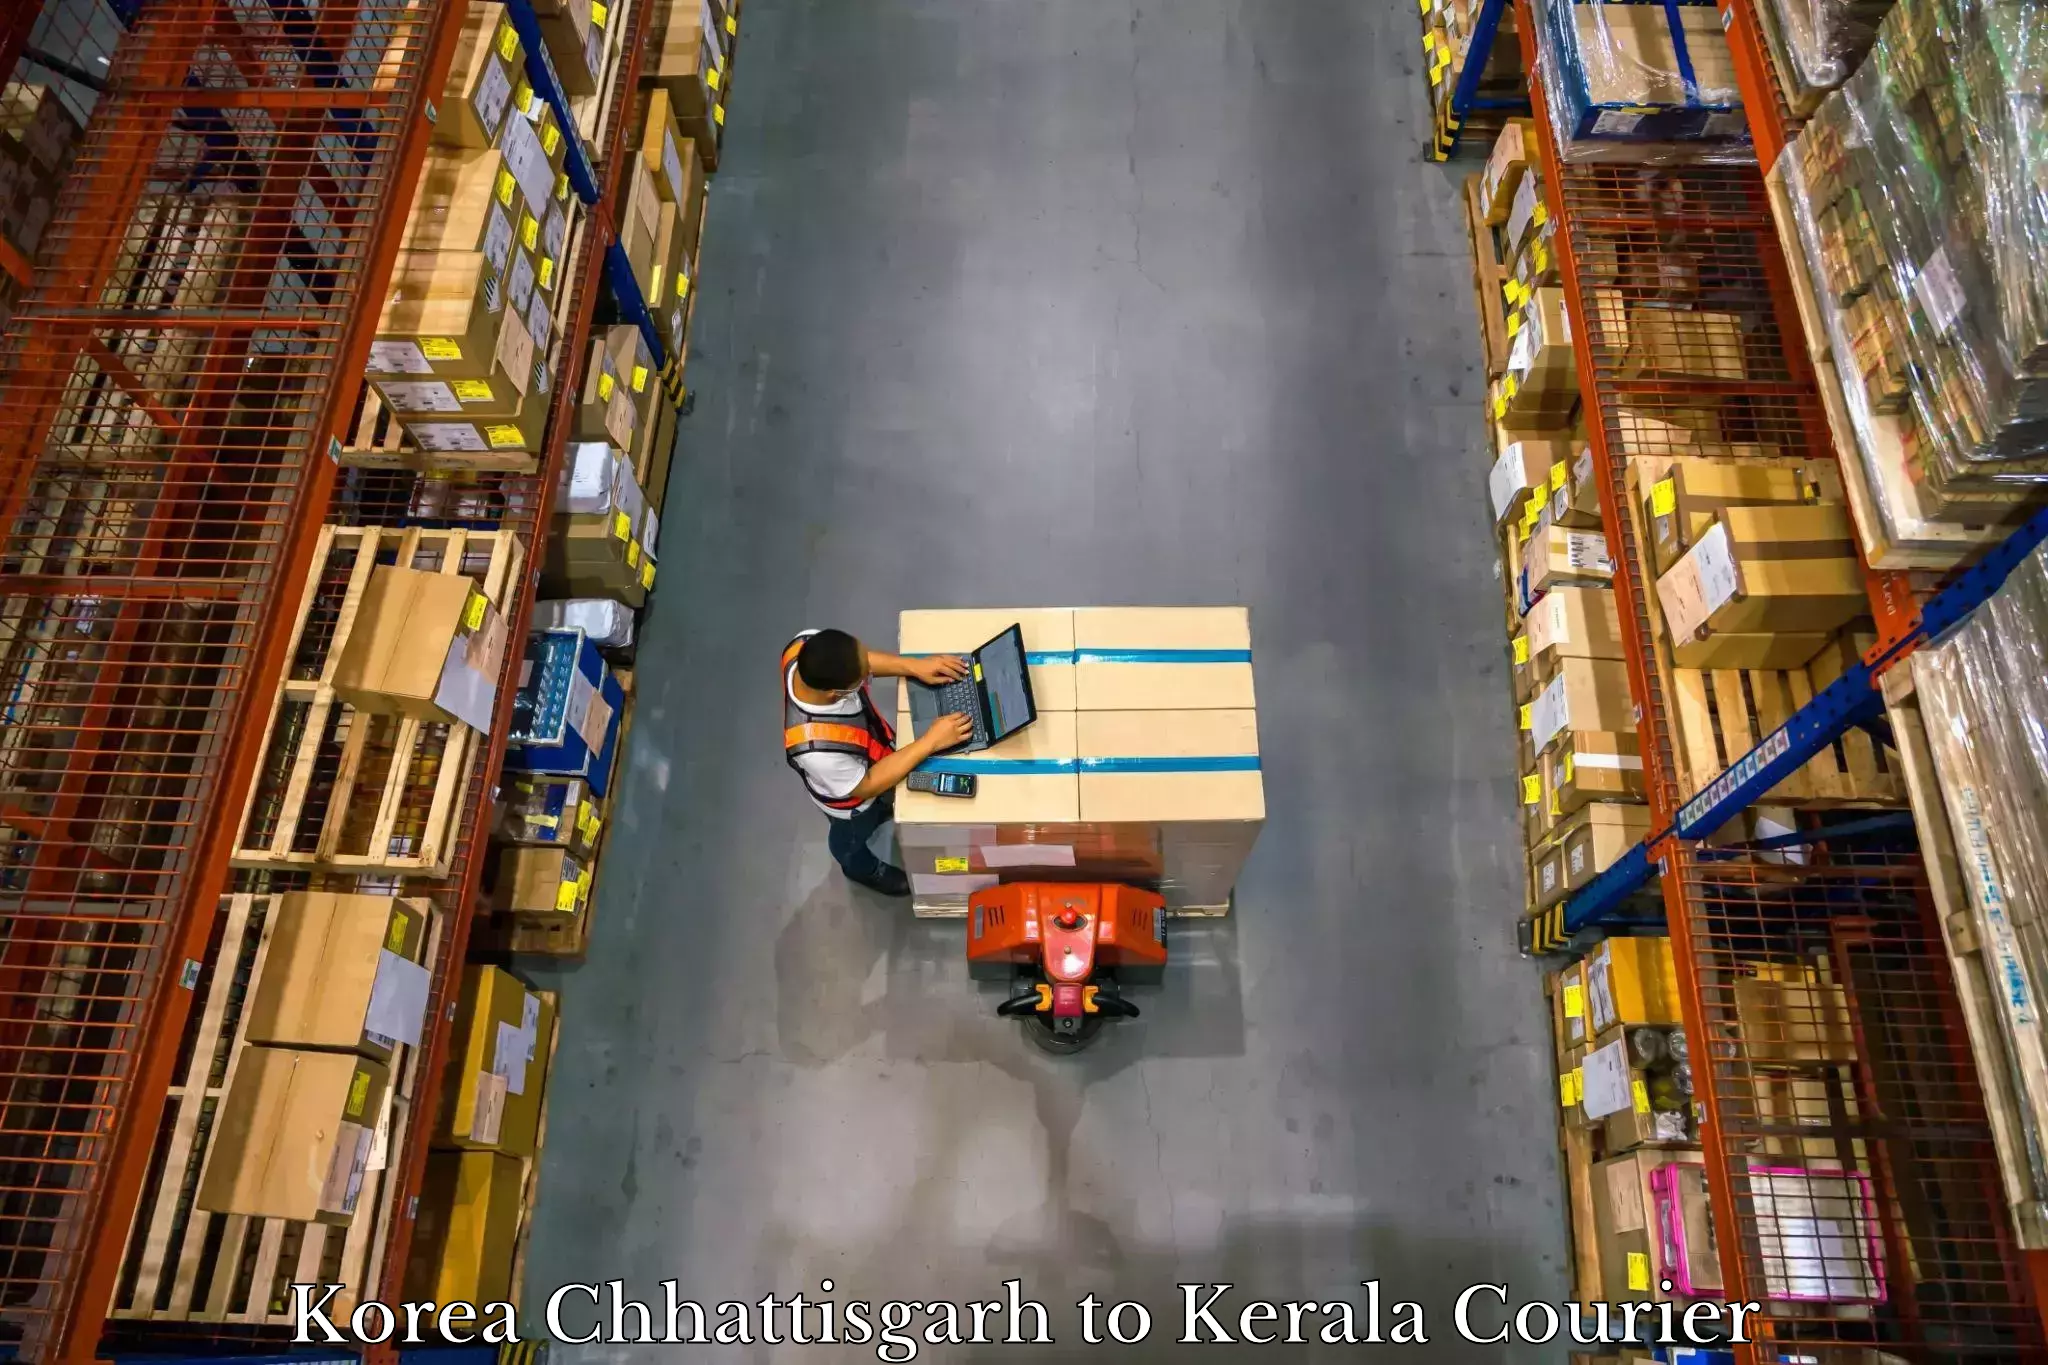 Streamlined baggage courier Korea Chhattisgarh to Nedumkandam